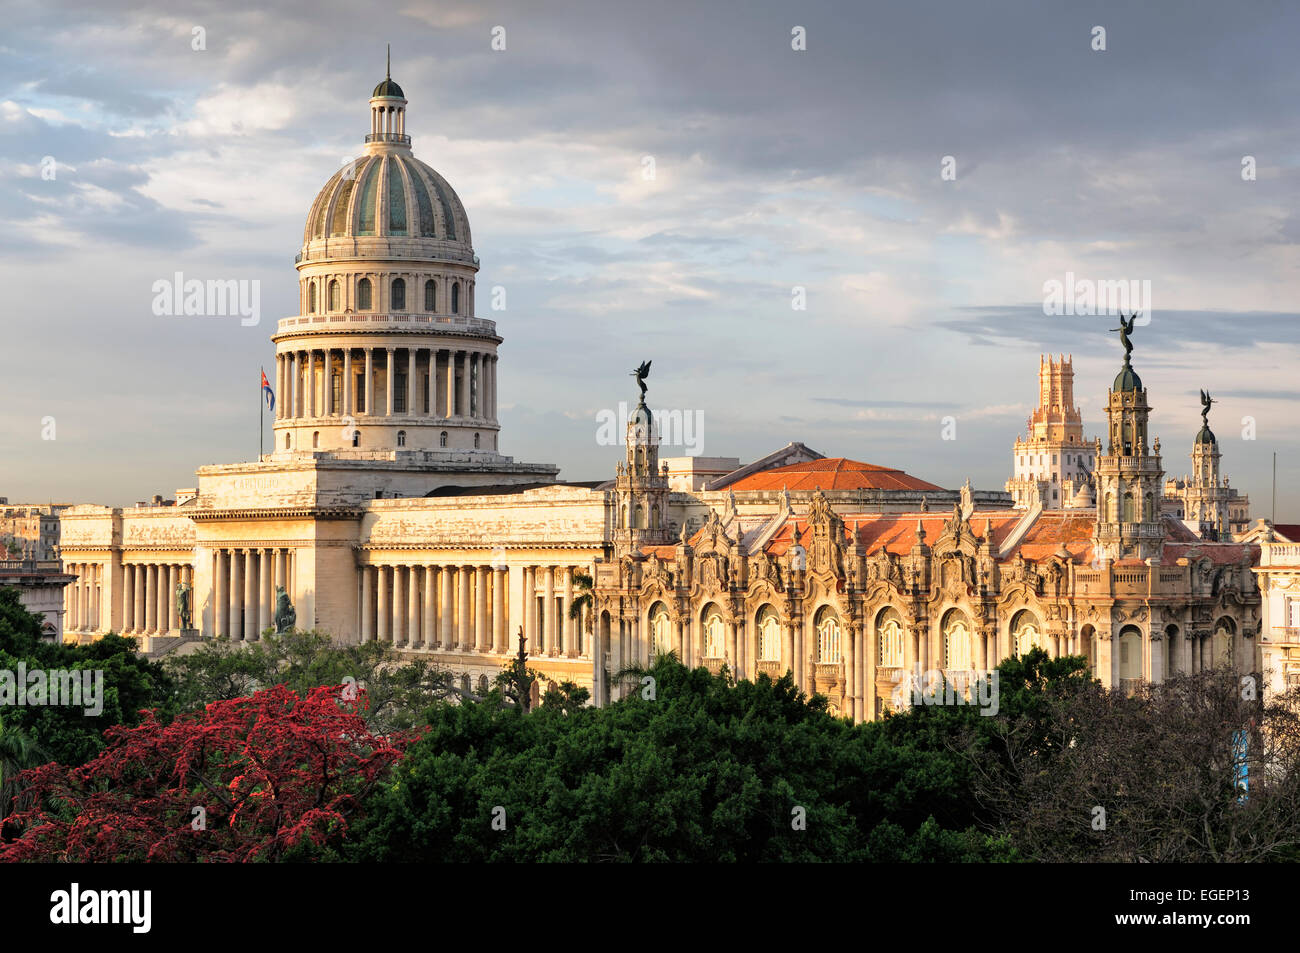 Parque Central on Paseo de Marti, Capitol, El Capitolio, Gran Teatro, theatre, Centro Habana, Havana, Ciudad de La Habana, Cuba Stock Photo